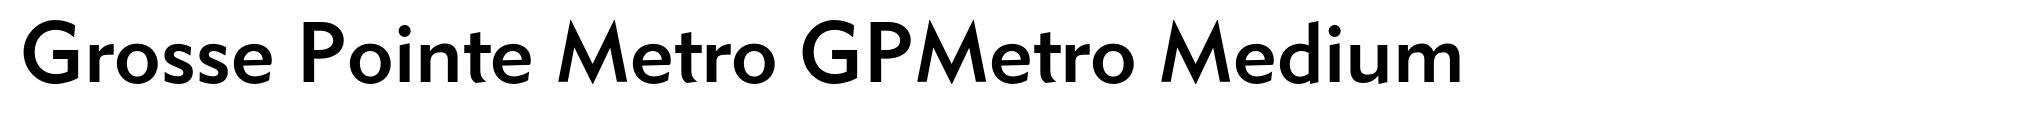 Grosse Pointe Metro GPMetro Medium image